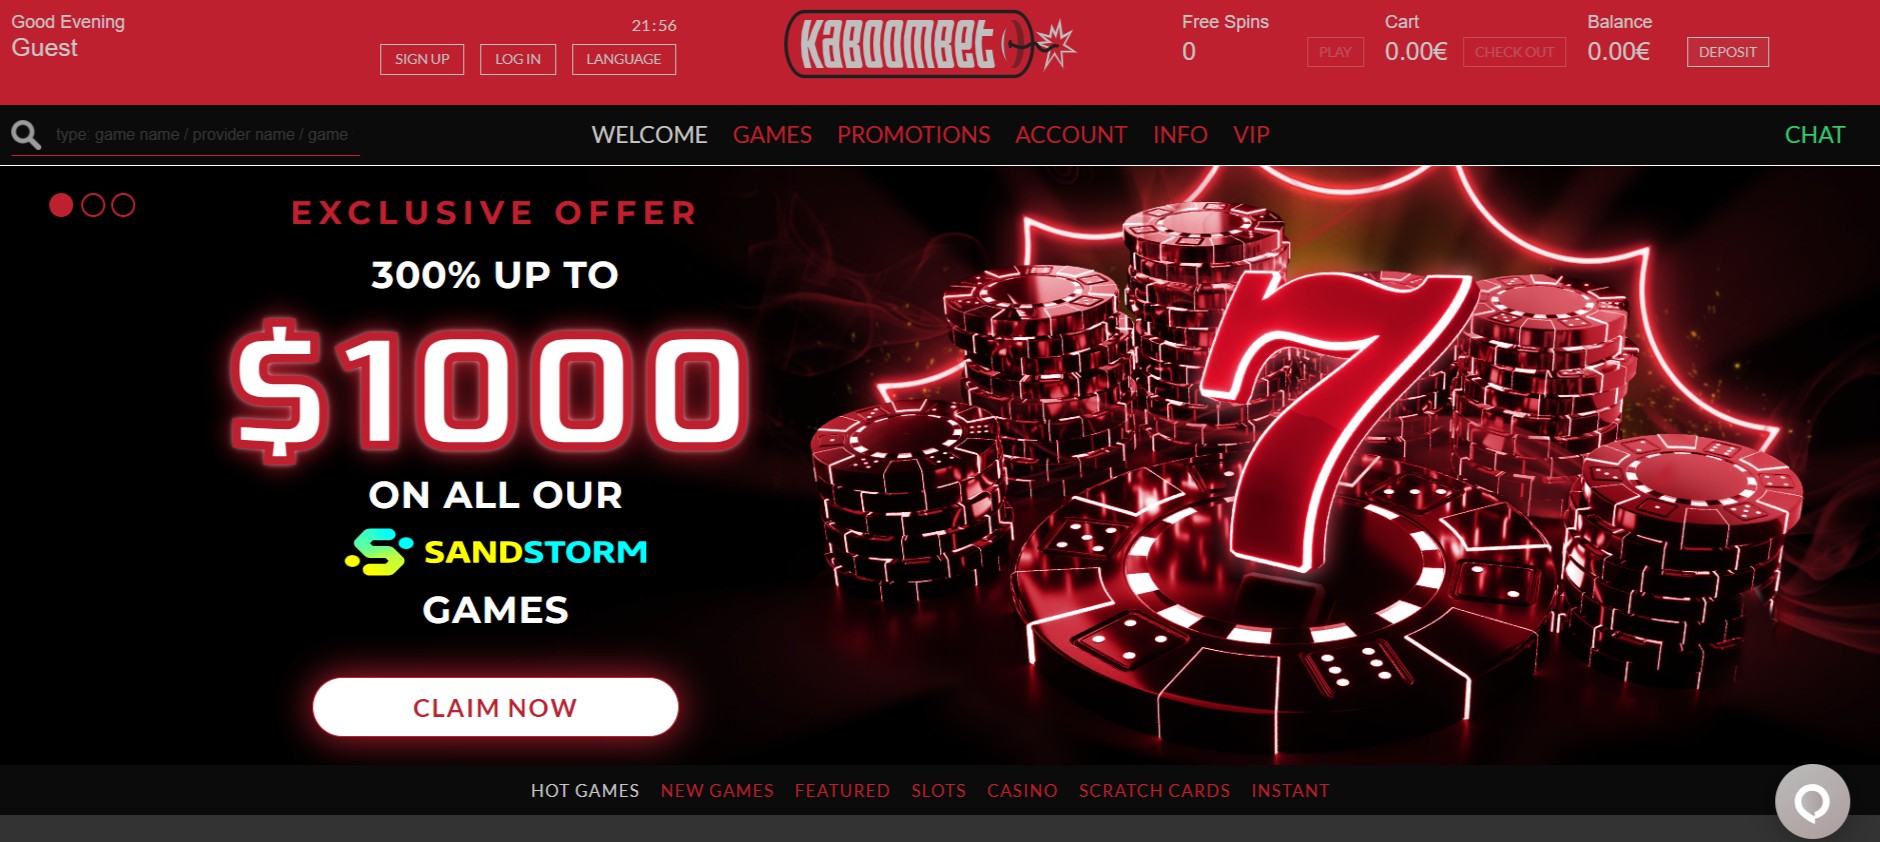 Kaboombet Casino homepage screenshot